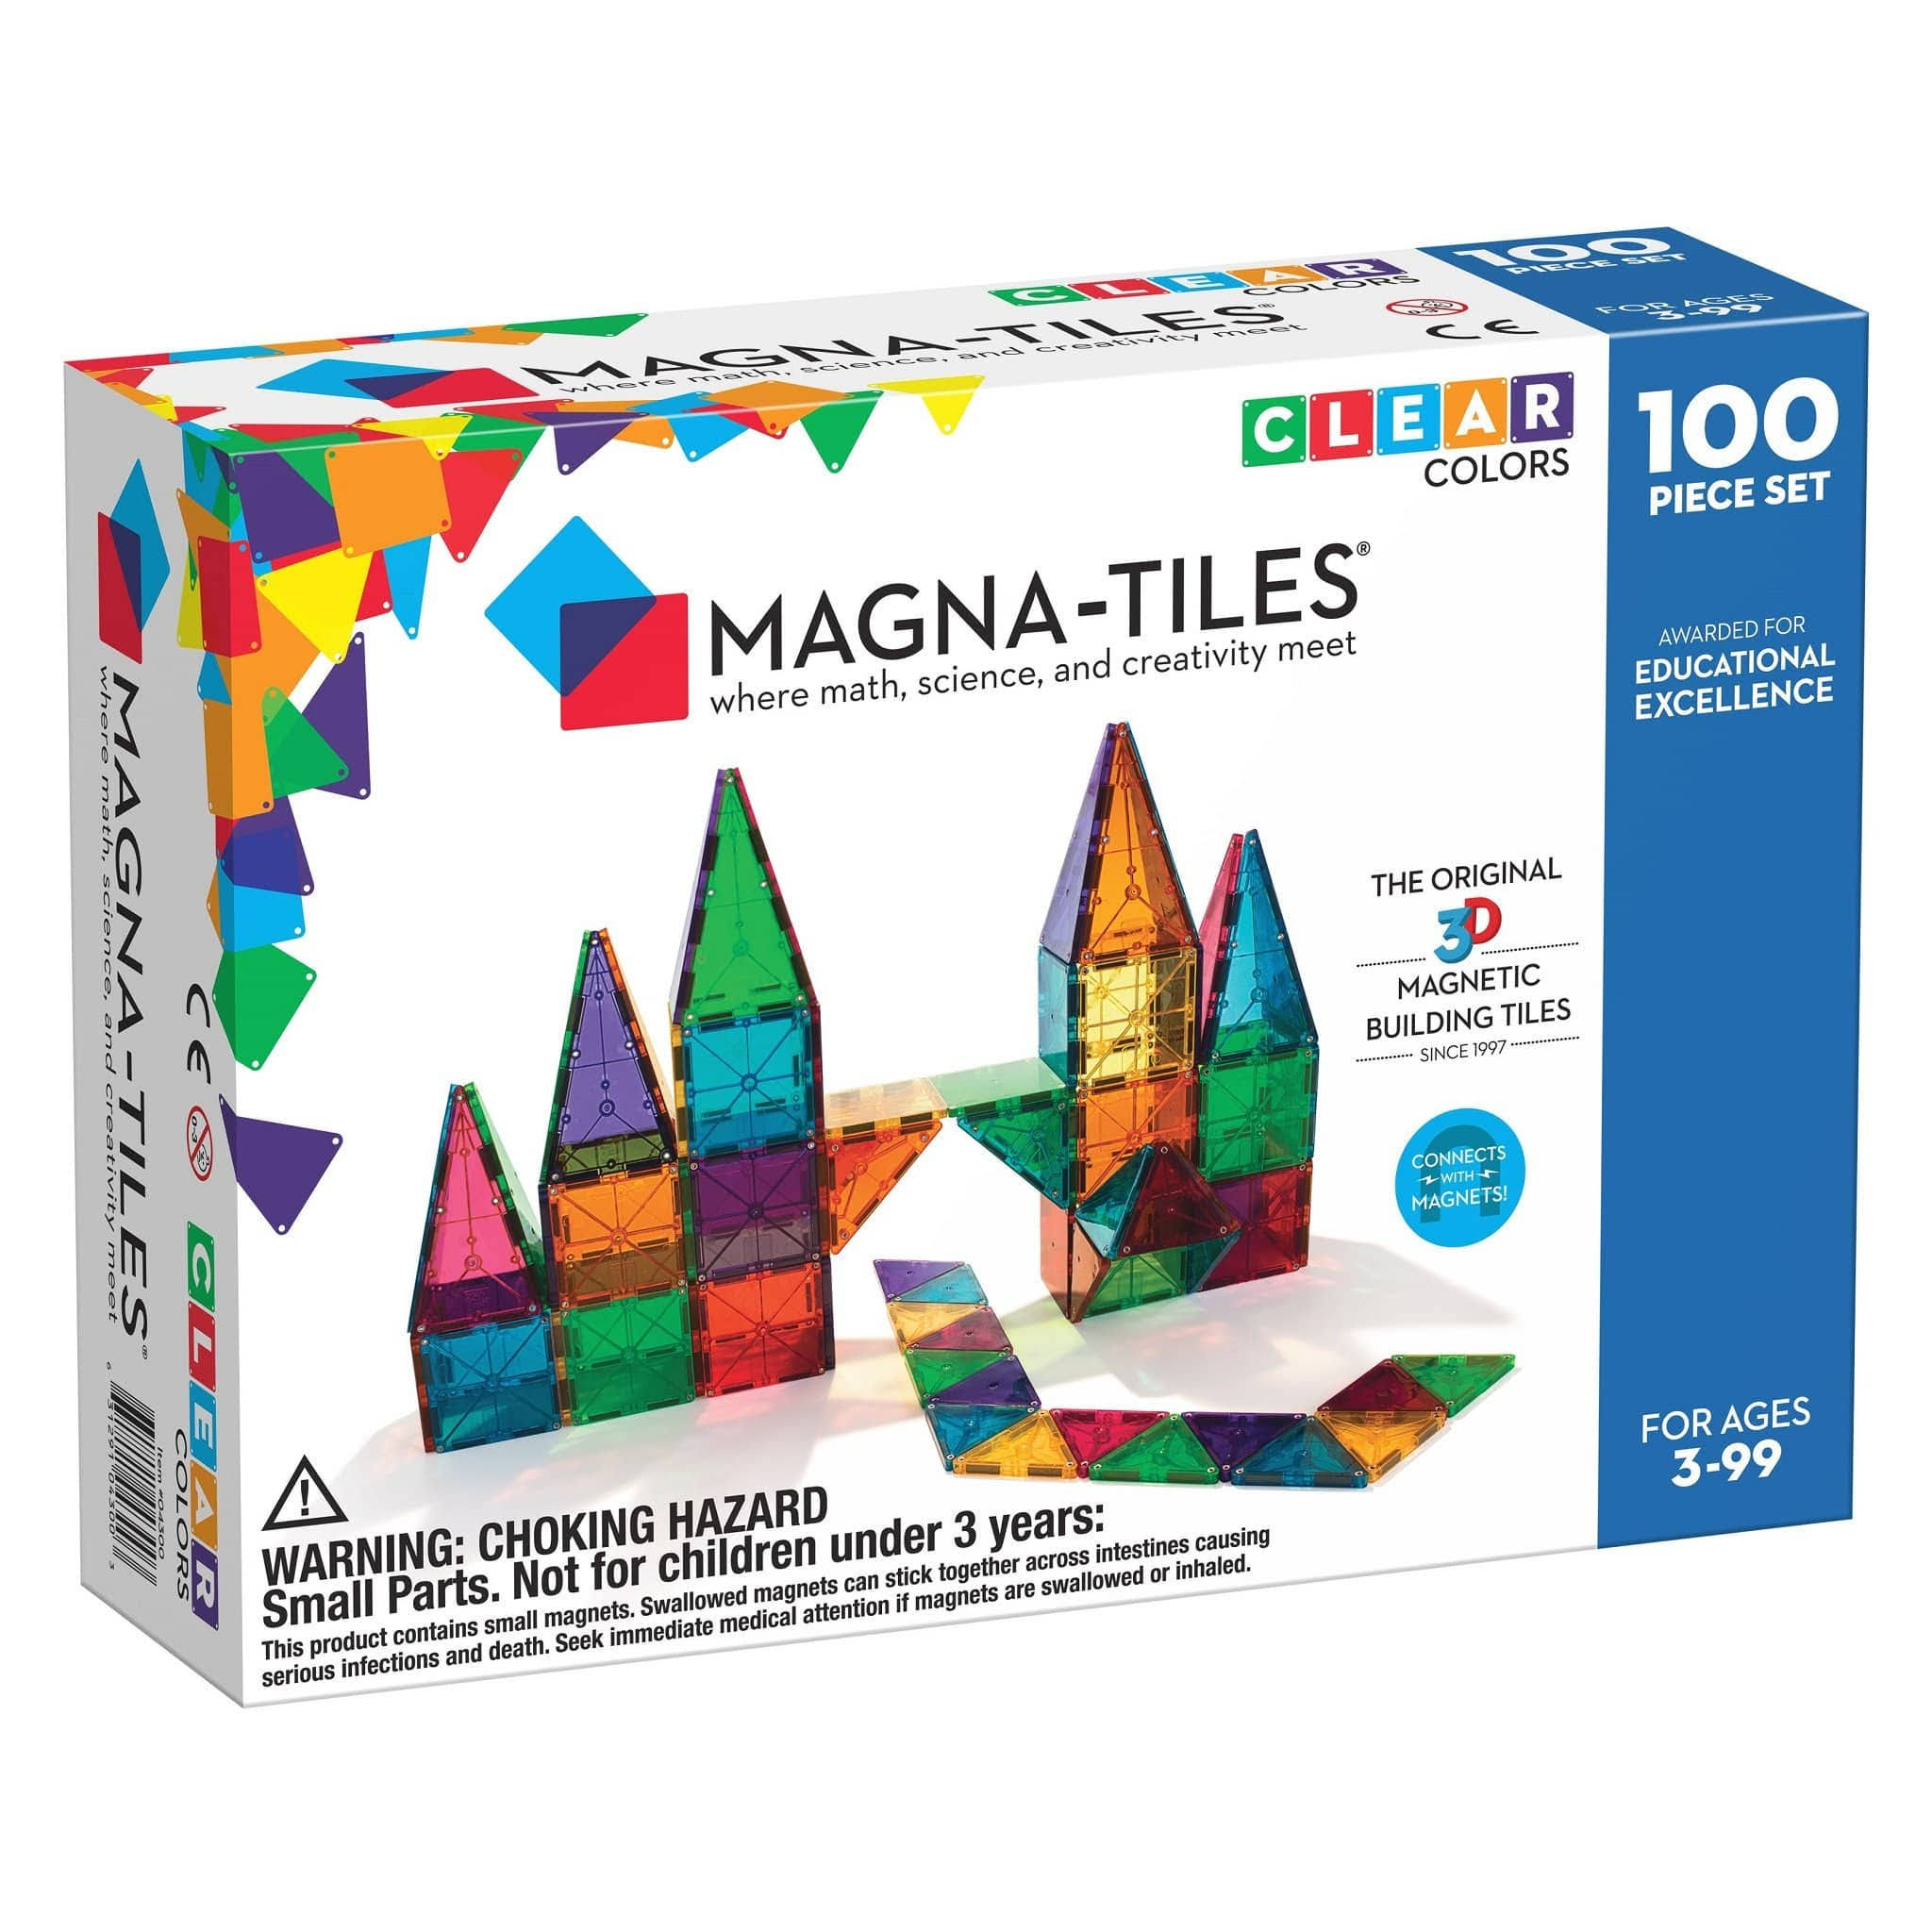 Magna Tiles Clear Colors 100 Piece Set